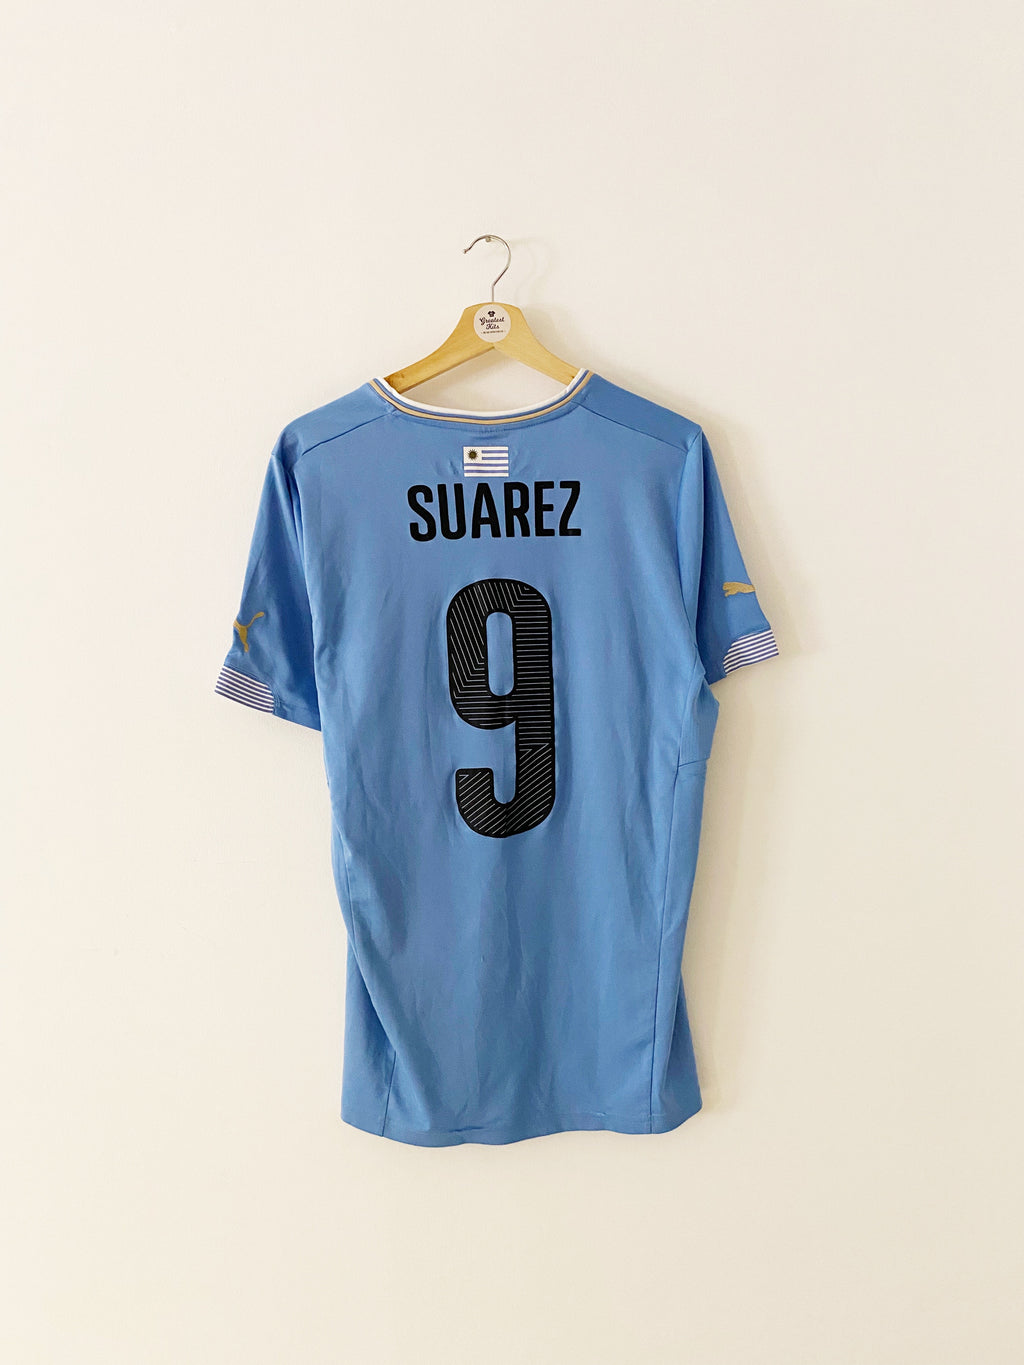 2014/15 Uruguay Home Shirt Suarez #9 (L) 7.5/10